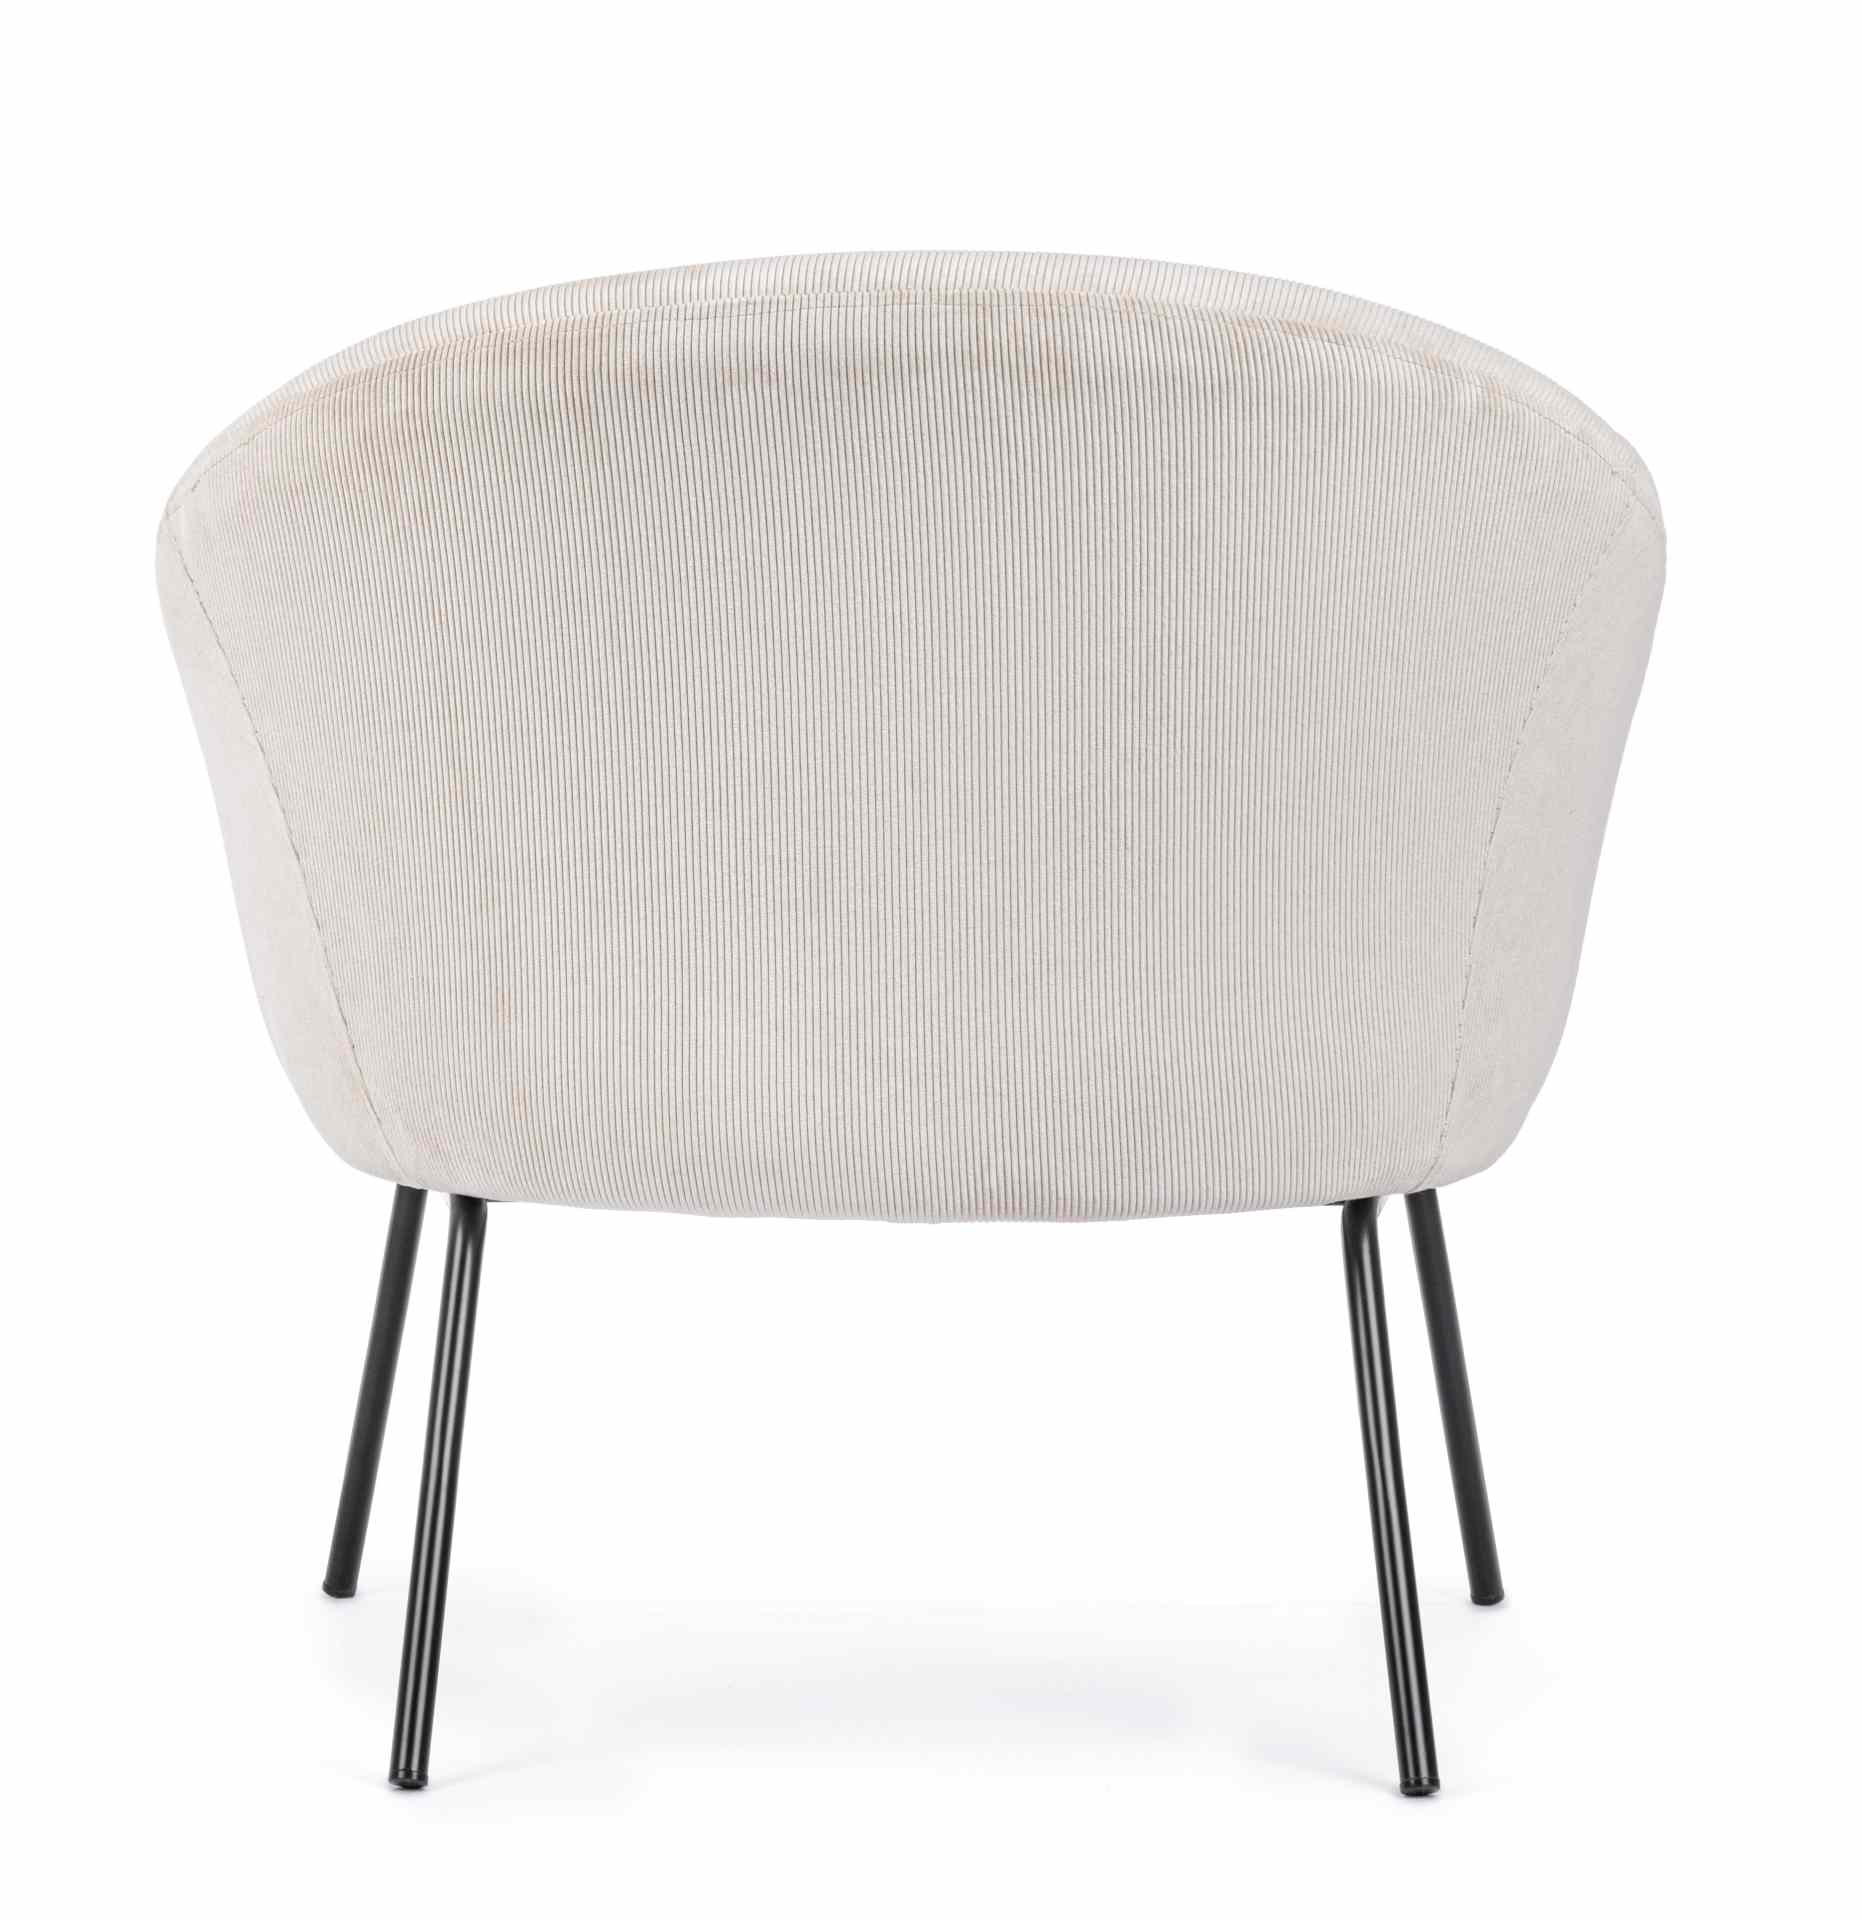 Der Sessel Aiko überzeugt mit seinem modernen Design. Gefertigt wurde er aus Stoff in Cord-Optik, welcher einen weißen Farbton besitzt. Das Gestell ist aus Metall und hat eine schwarze Farbe. Der Sessel besitzt eine Sitzhöhe von 45 cm. Die Breite beträgt 